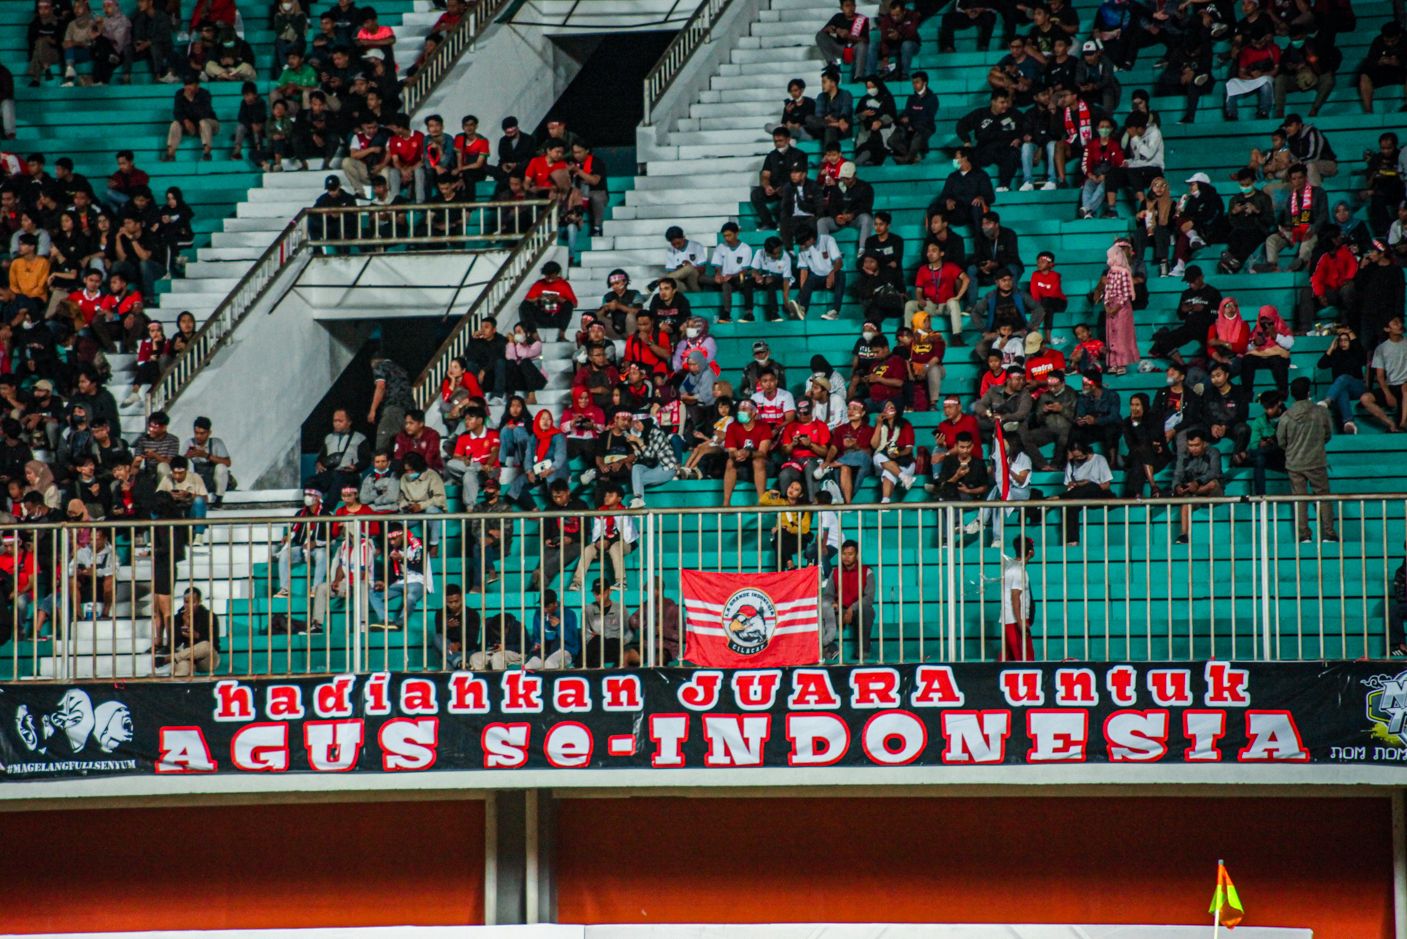 Final Piala AFF U16 Indonesia Vs Vietnam dan Hadiah untuk Agus Se-Indonesia